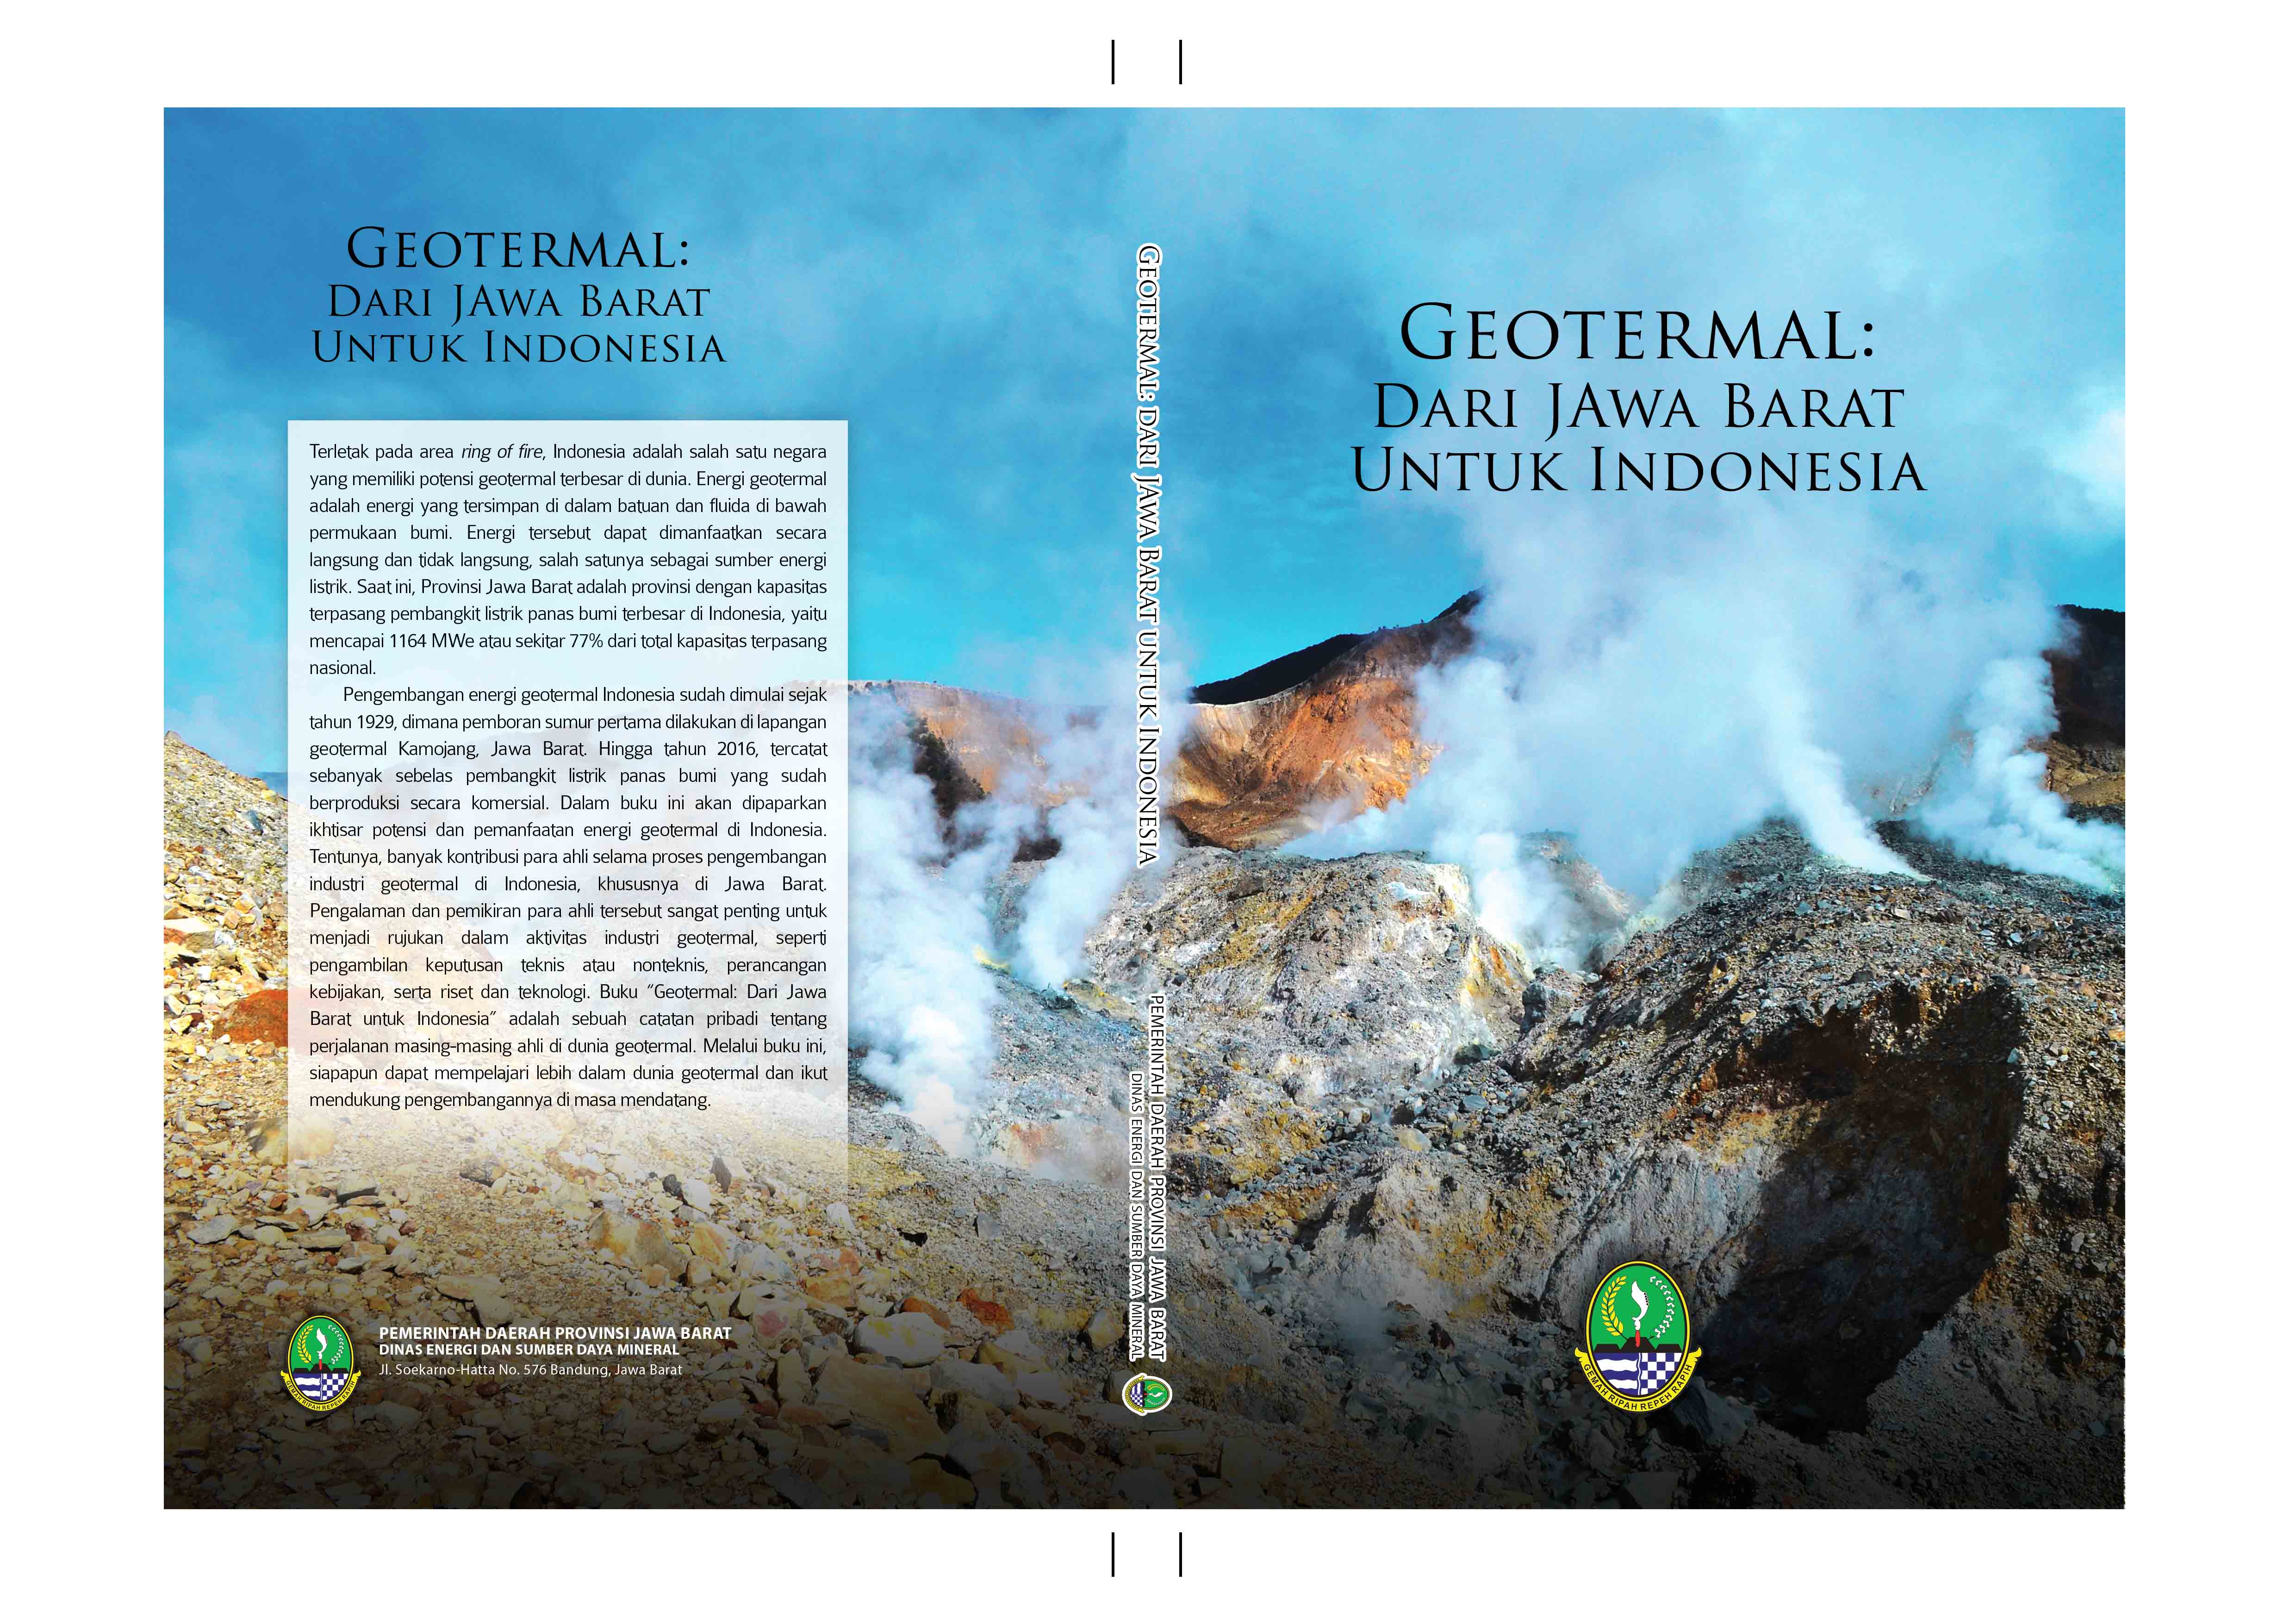 Geothermal Book  “CERITA DI BALIK GEOTERMAL INDONESIA”